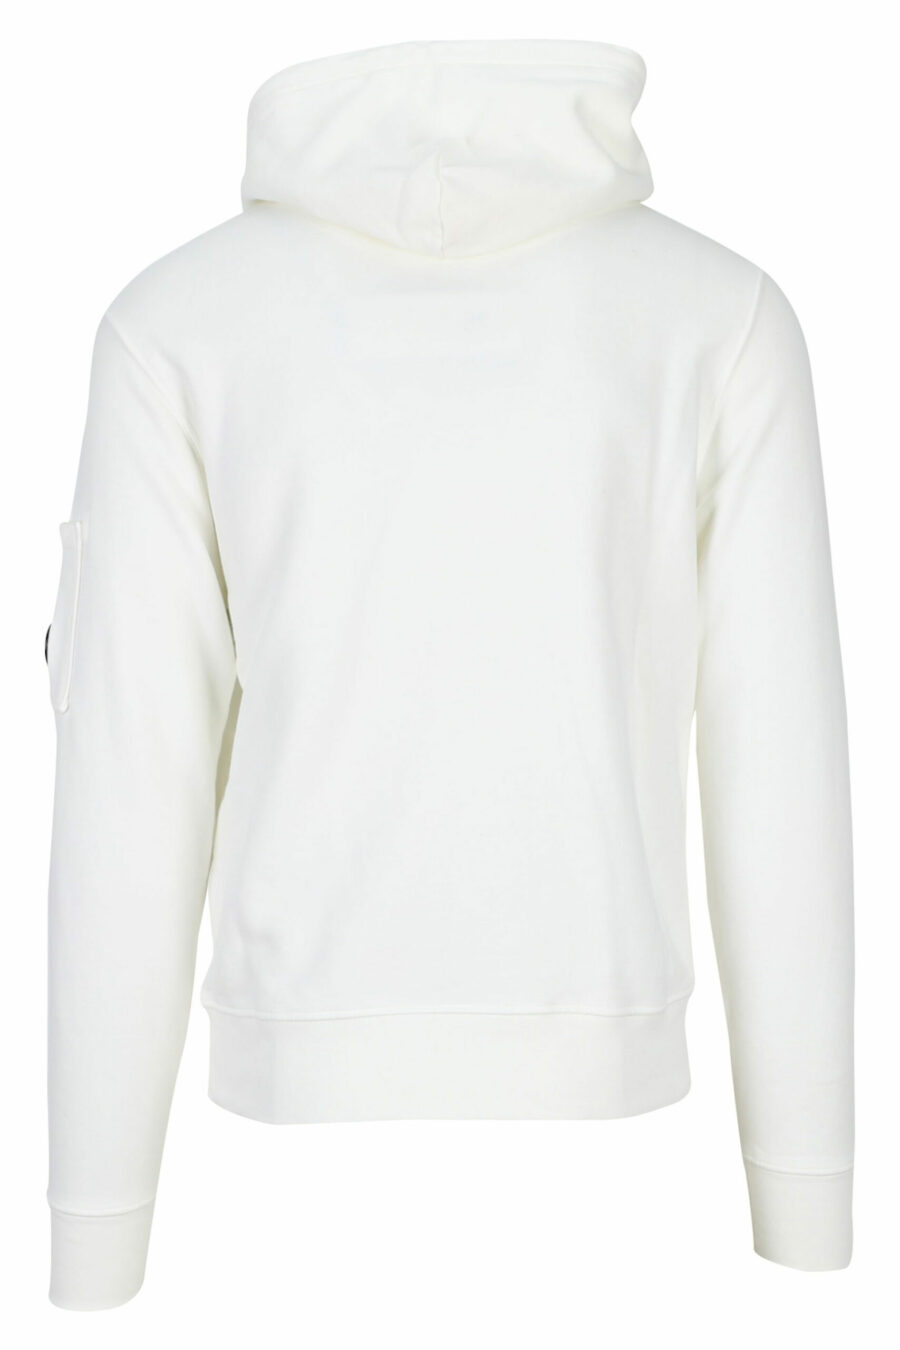 Weißes Kapuzensweatshirt mit seitlicher Logolinse - 7620943597783 2 skaliert